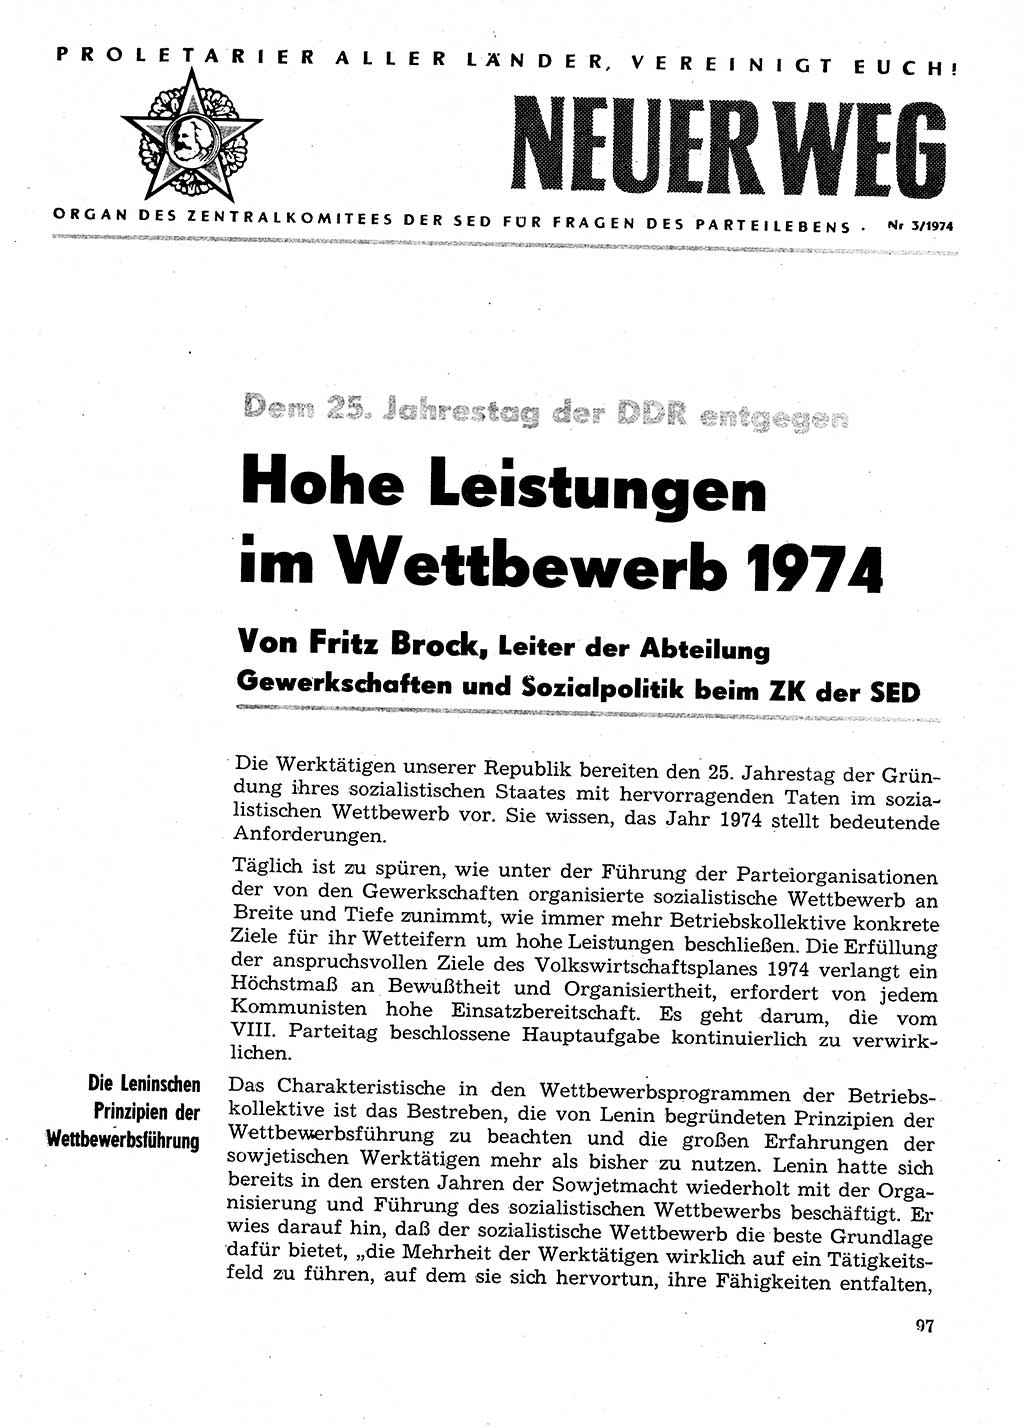 Neuer Weg (NW), Organ des Zentralkomitees (ZK) der SED (Sozialistische Einheitspartei Deutschlands) für Fragen des Parteilebens, 29. Jahrgang [Deutsche Demokratische Republik (DDR)] 1974, Seite 97 (NW ZK SED DDR 1974, S. 97)